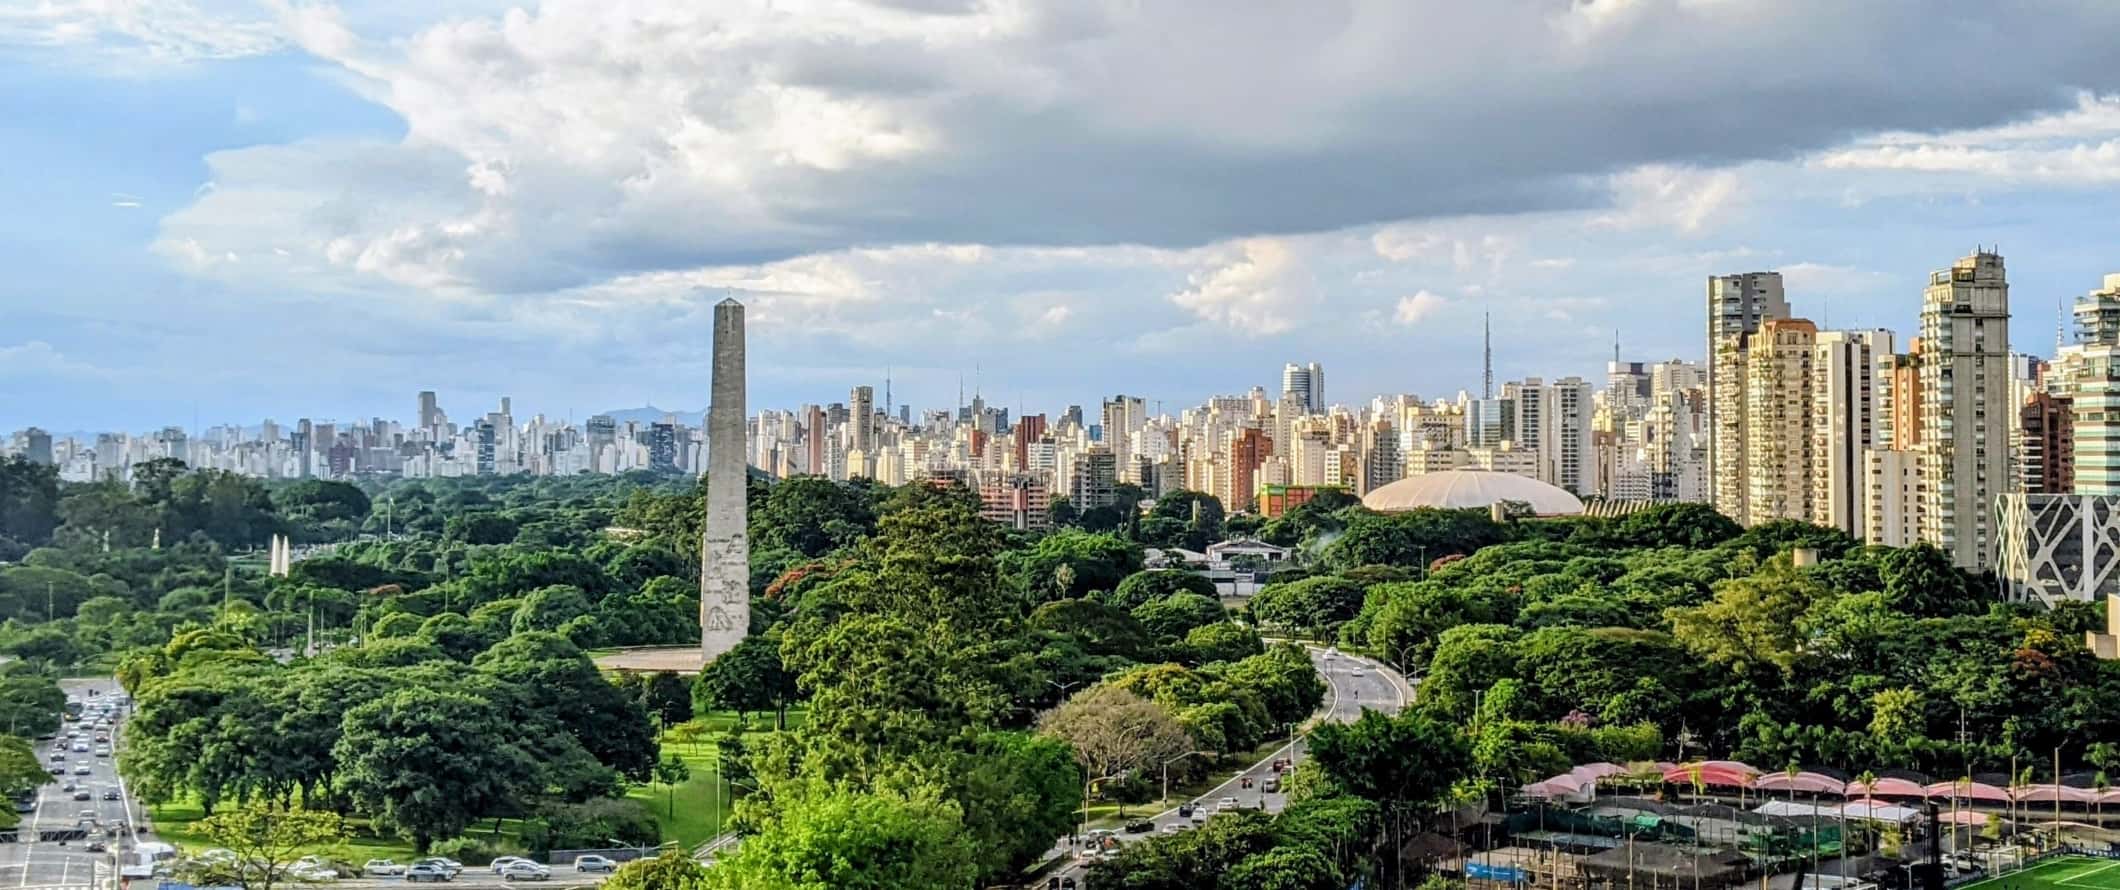 Horizonte de São Paulo com o obelisco e o Parque Ibirapuera em primeiro plano e os arranha-céus da cidade ao fundo